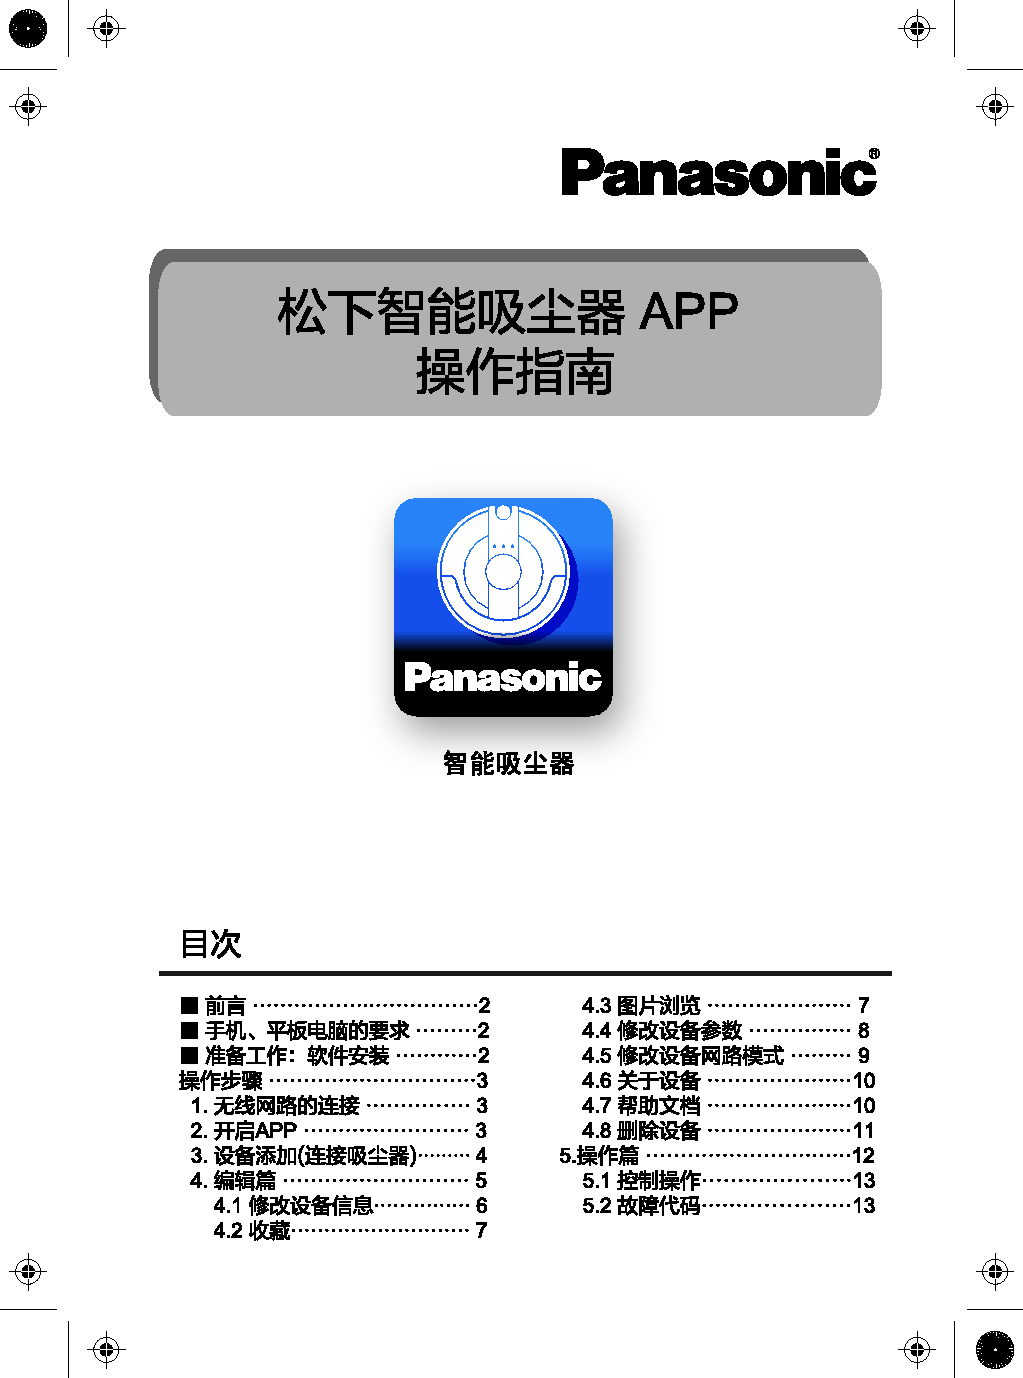 松下 Panasonic MC-RS855 WIFI APP 使用指南 封面